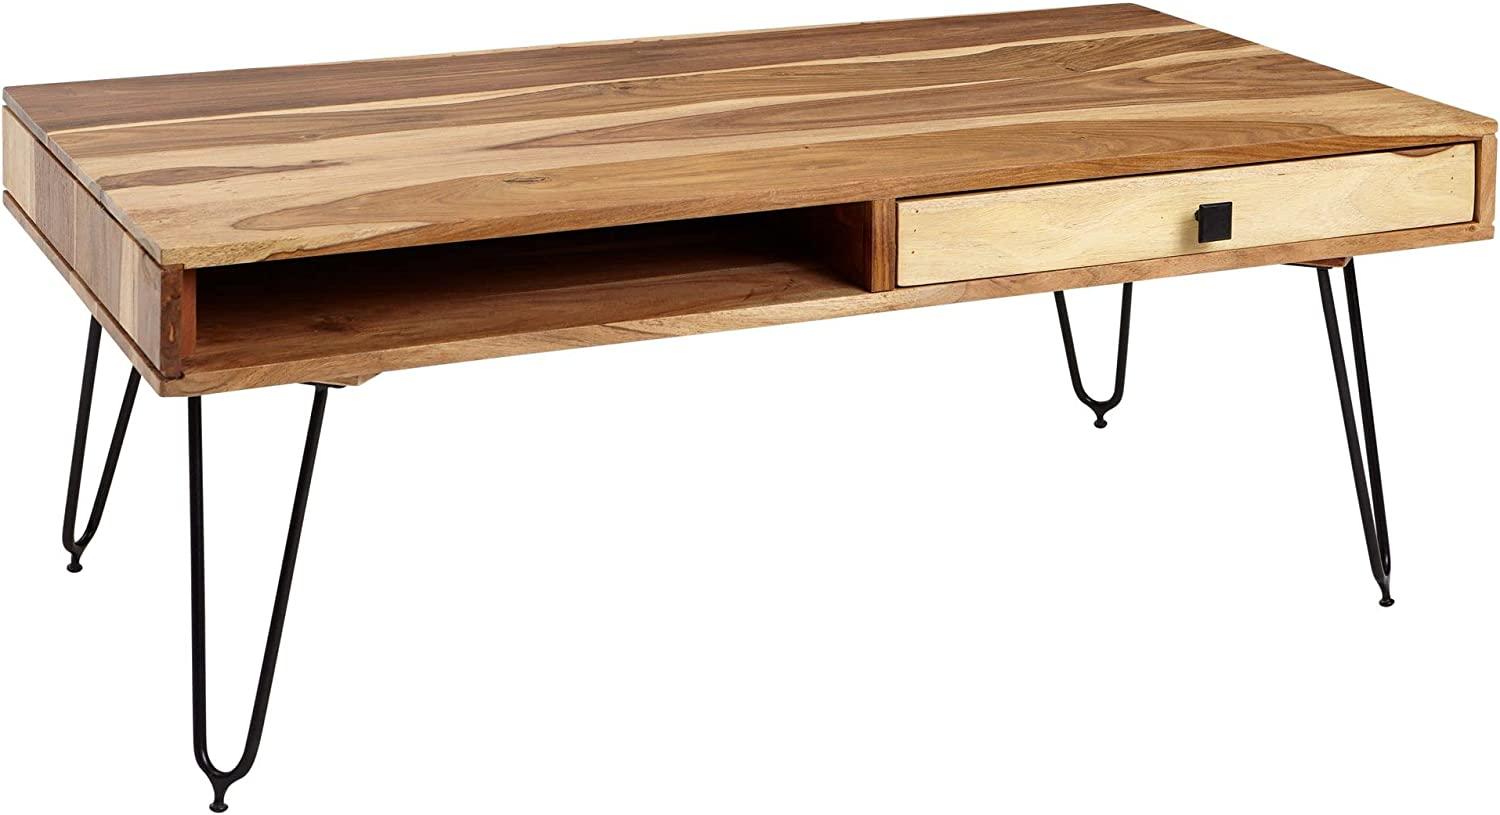 Wohnling Couchtisch HARLEM Massiv-Holz 120 cm breit Wohnzimmer-Tisch, Akazie Bild 1